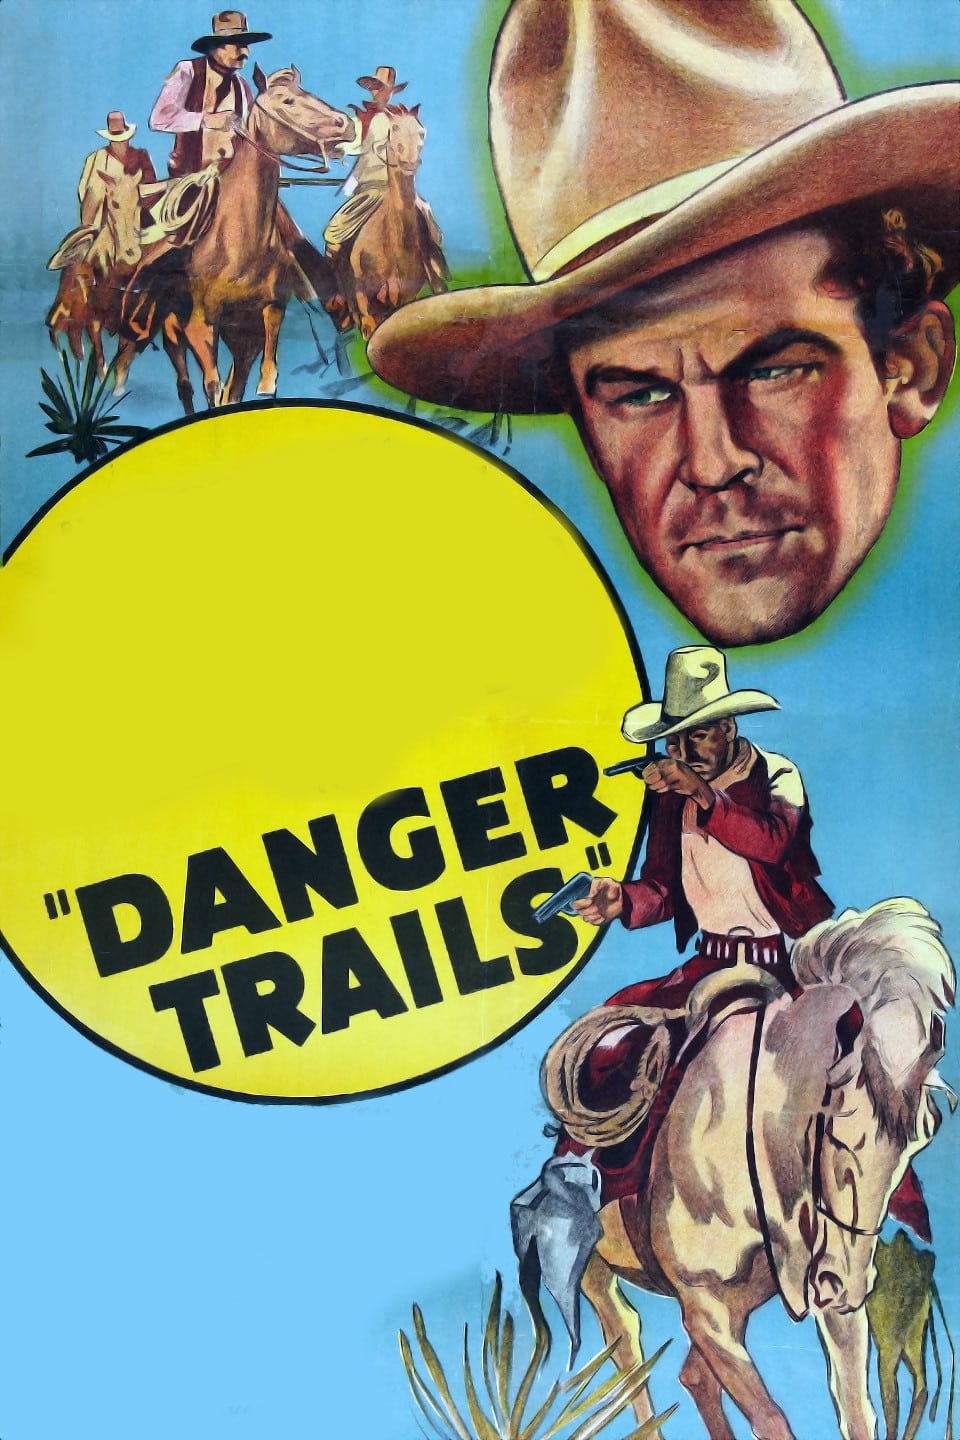 Danger Trails